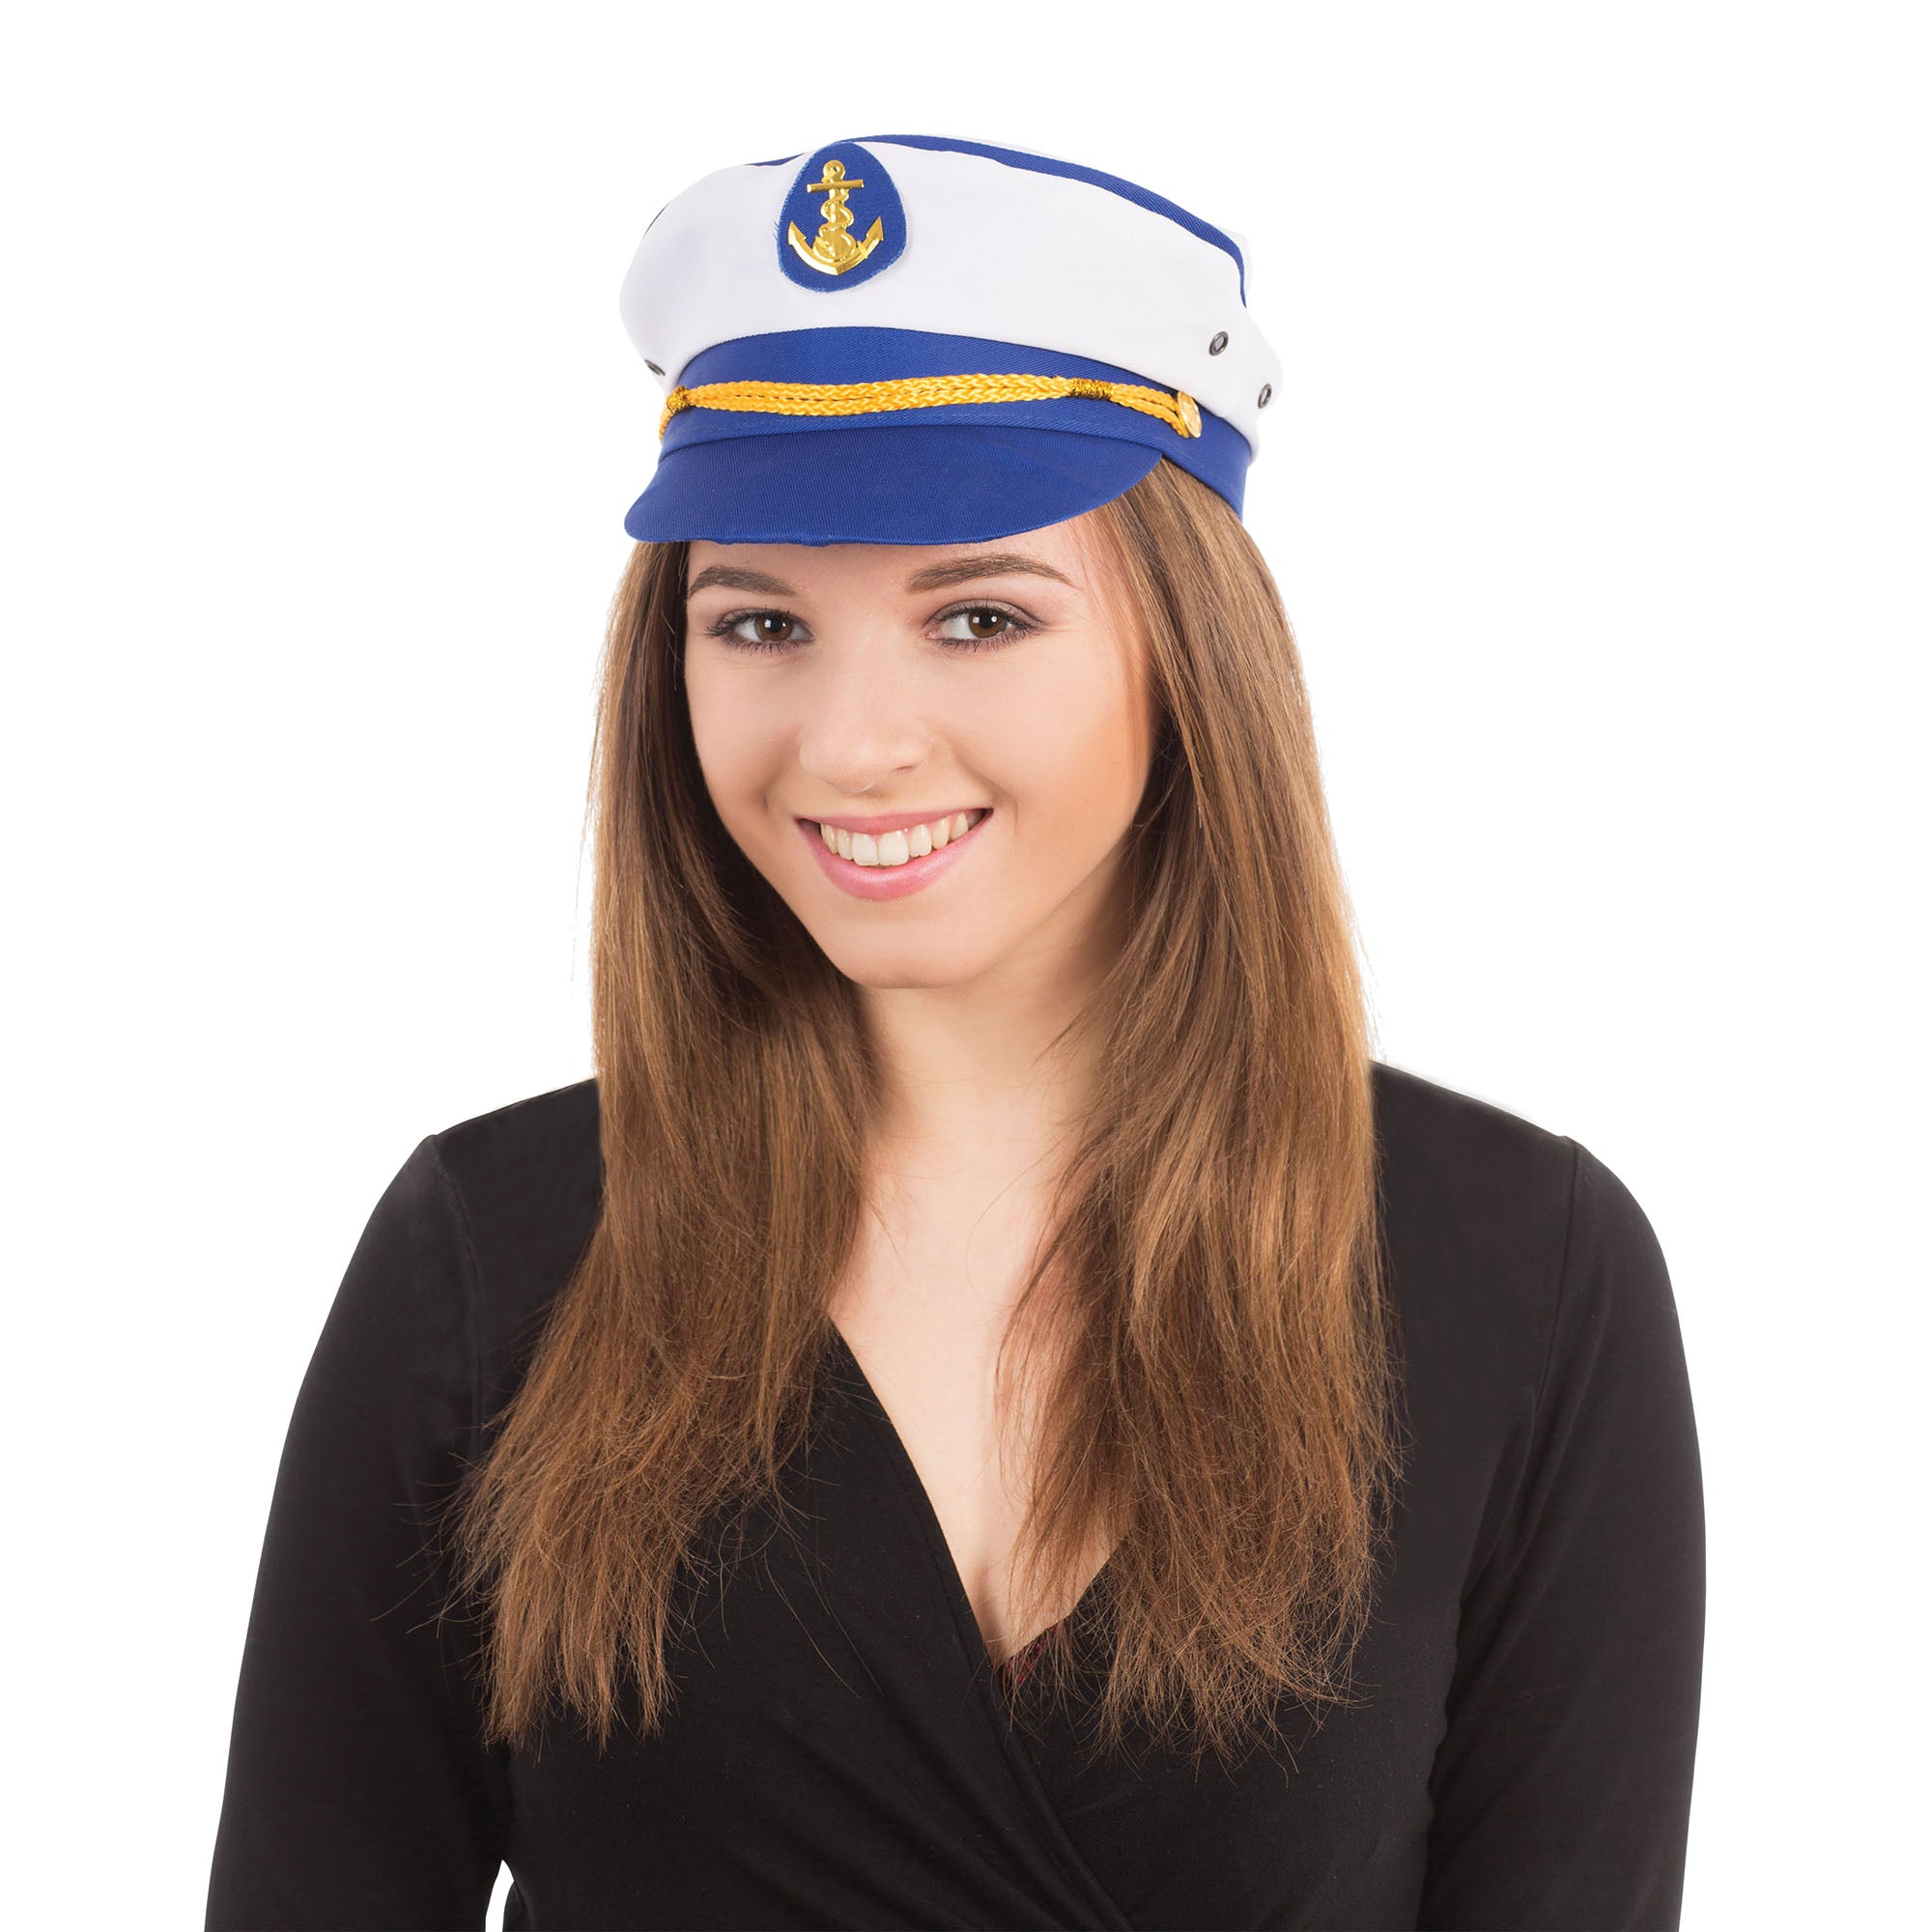 Lady Sailor Captain Hat for women.